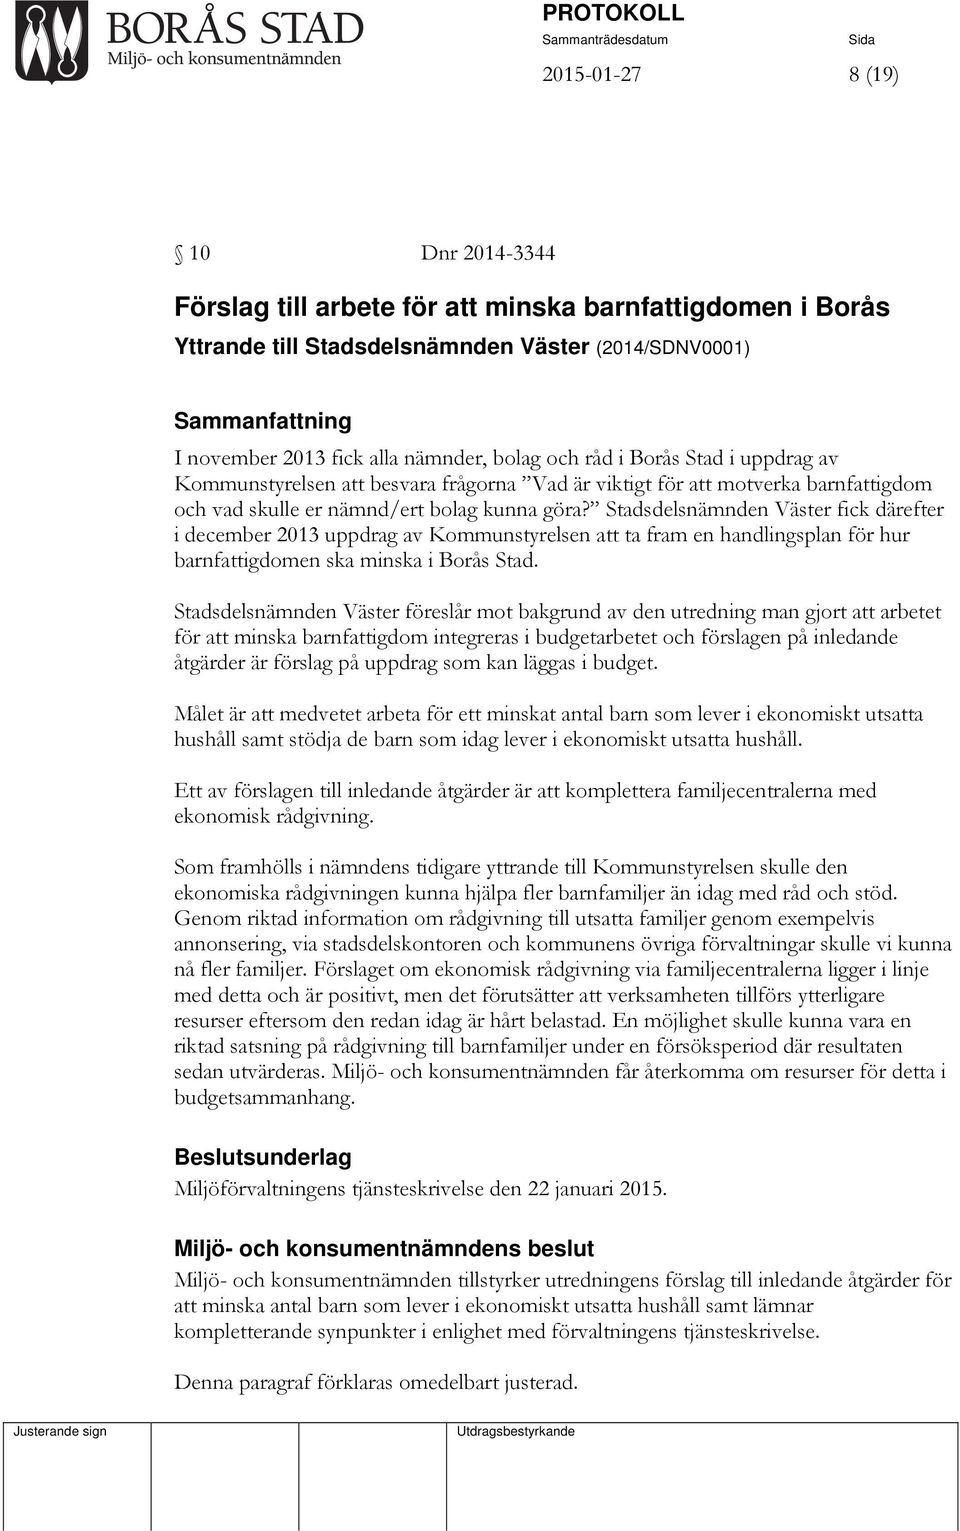 Stadsdelsnämnden Väster fick därefter i december 2013 uppdrag av Kommunstyrelsen att ta fram en handlingsplan för hur barnfattigdomen ska minska i Borås Stad.